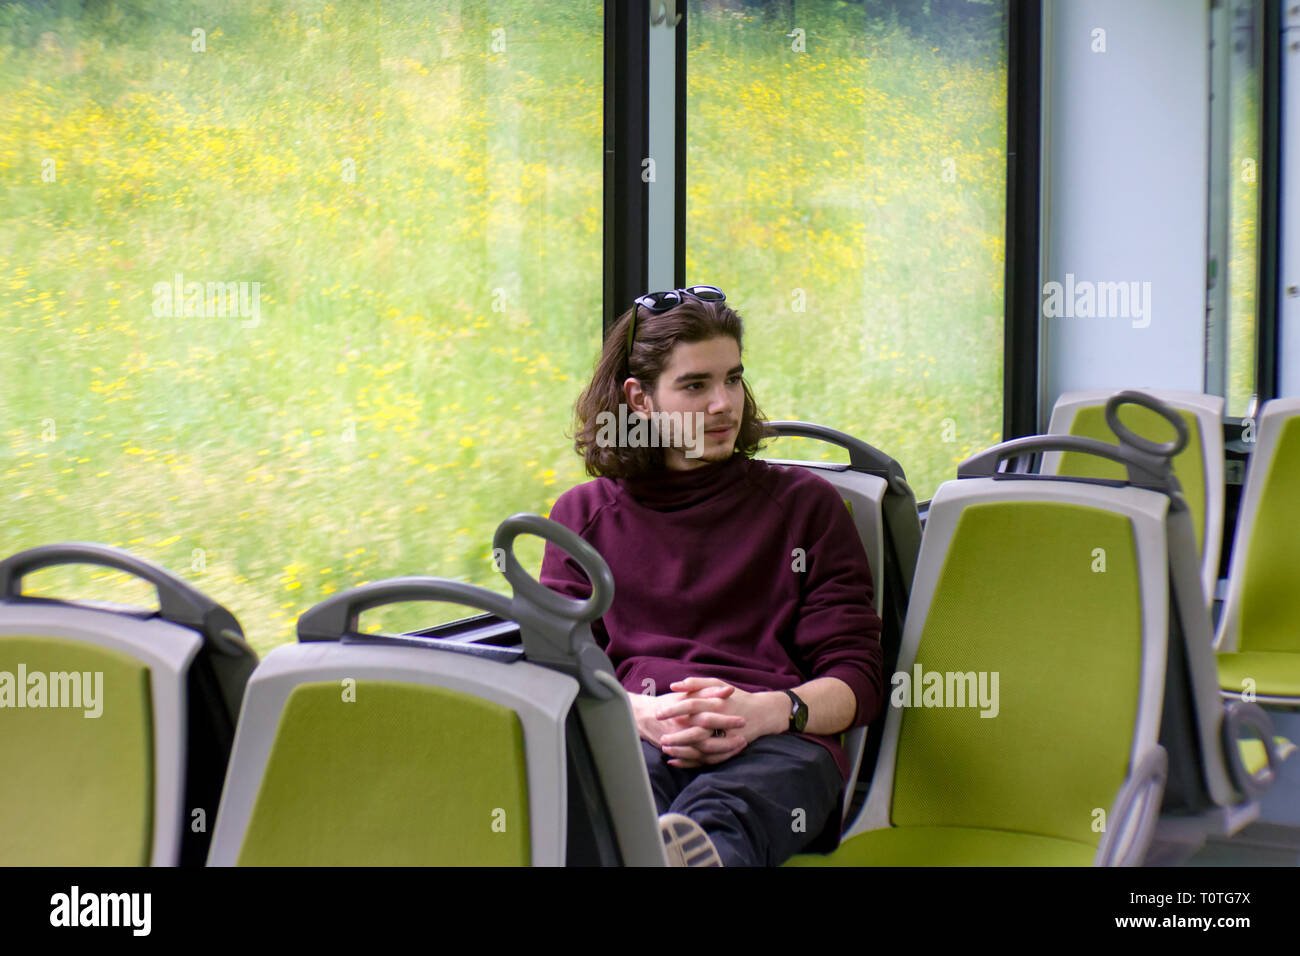 Ein hübscher Kerl fährt eine S-Bahn, sitzt und schaut aus dem Fenster, draußen vor dem Fenster ist eine blühende Frühlingswiese. Stockfoto